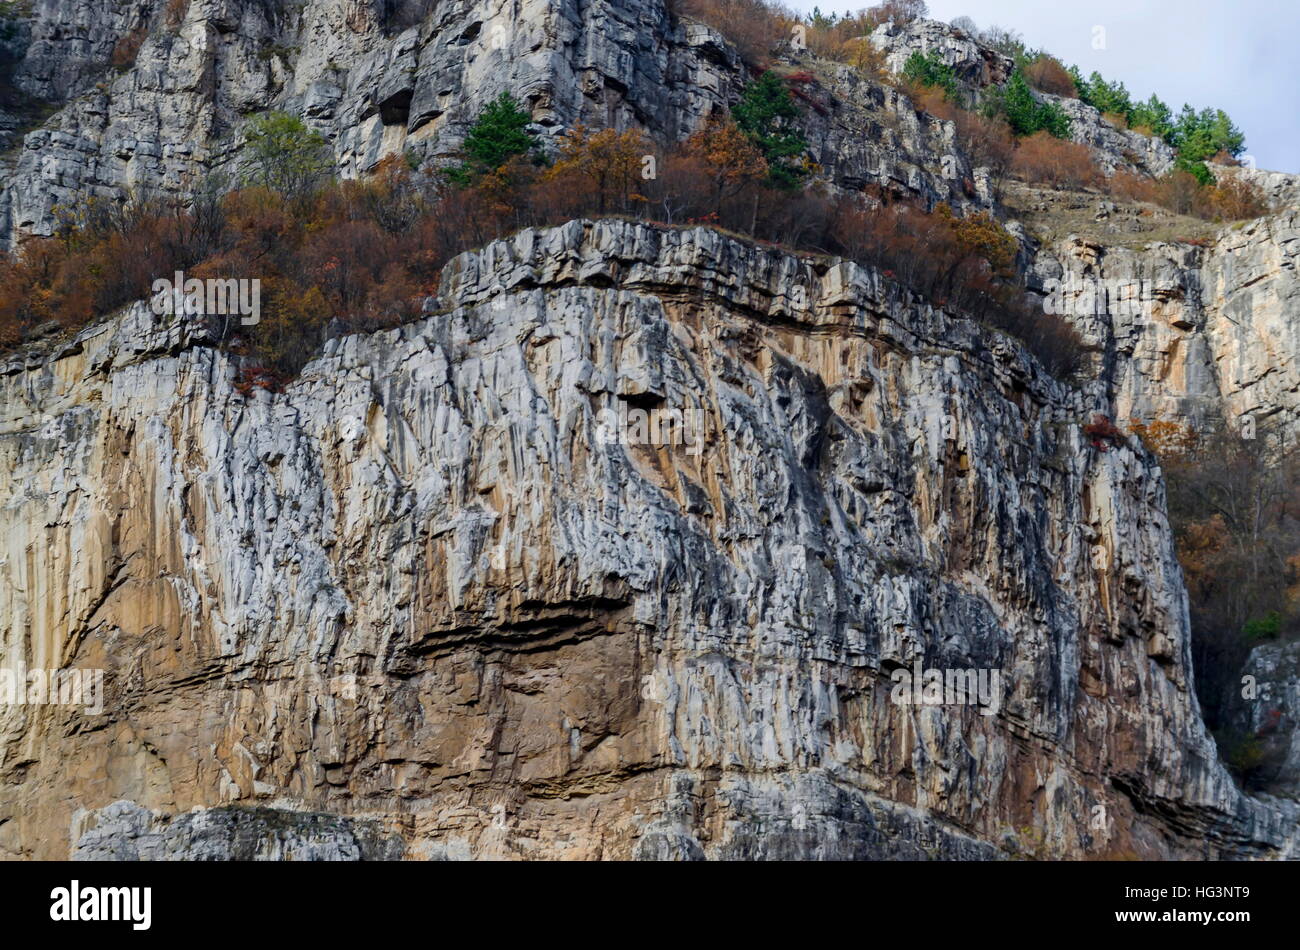 Magnifica Lakatnik rocce in piena altezza, Iskar river contaminano, provincia di Sofia, Bulgaria Foto Stock